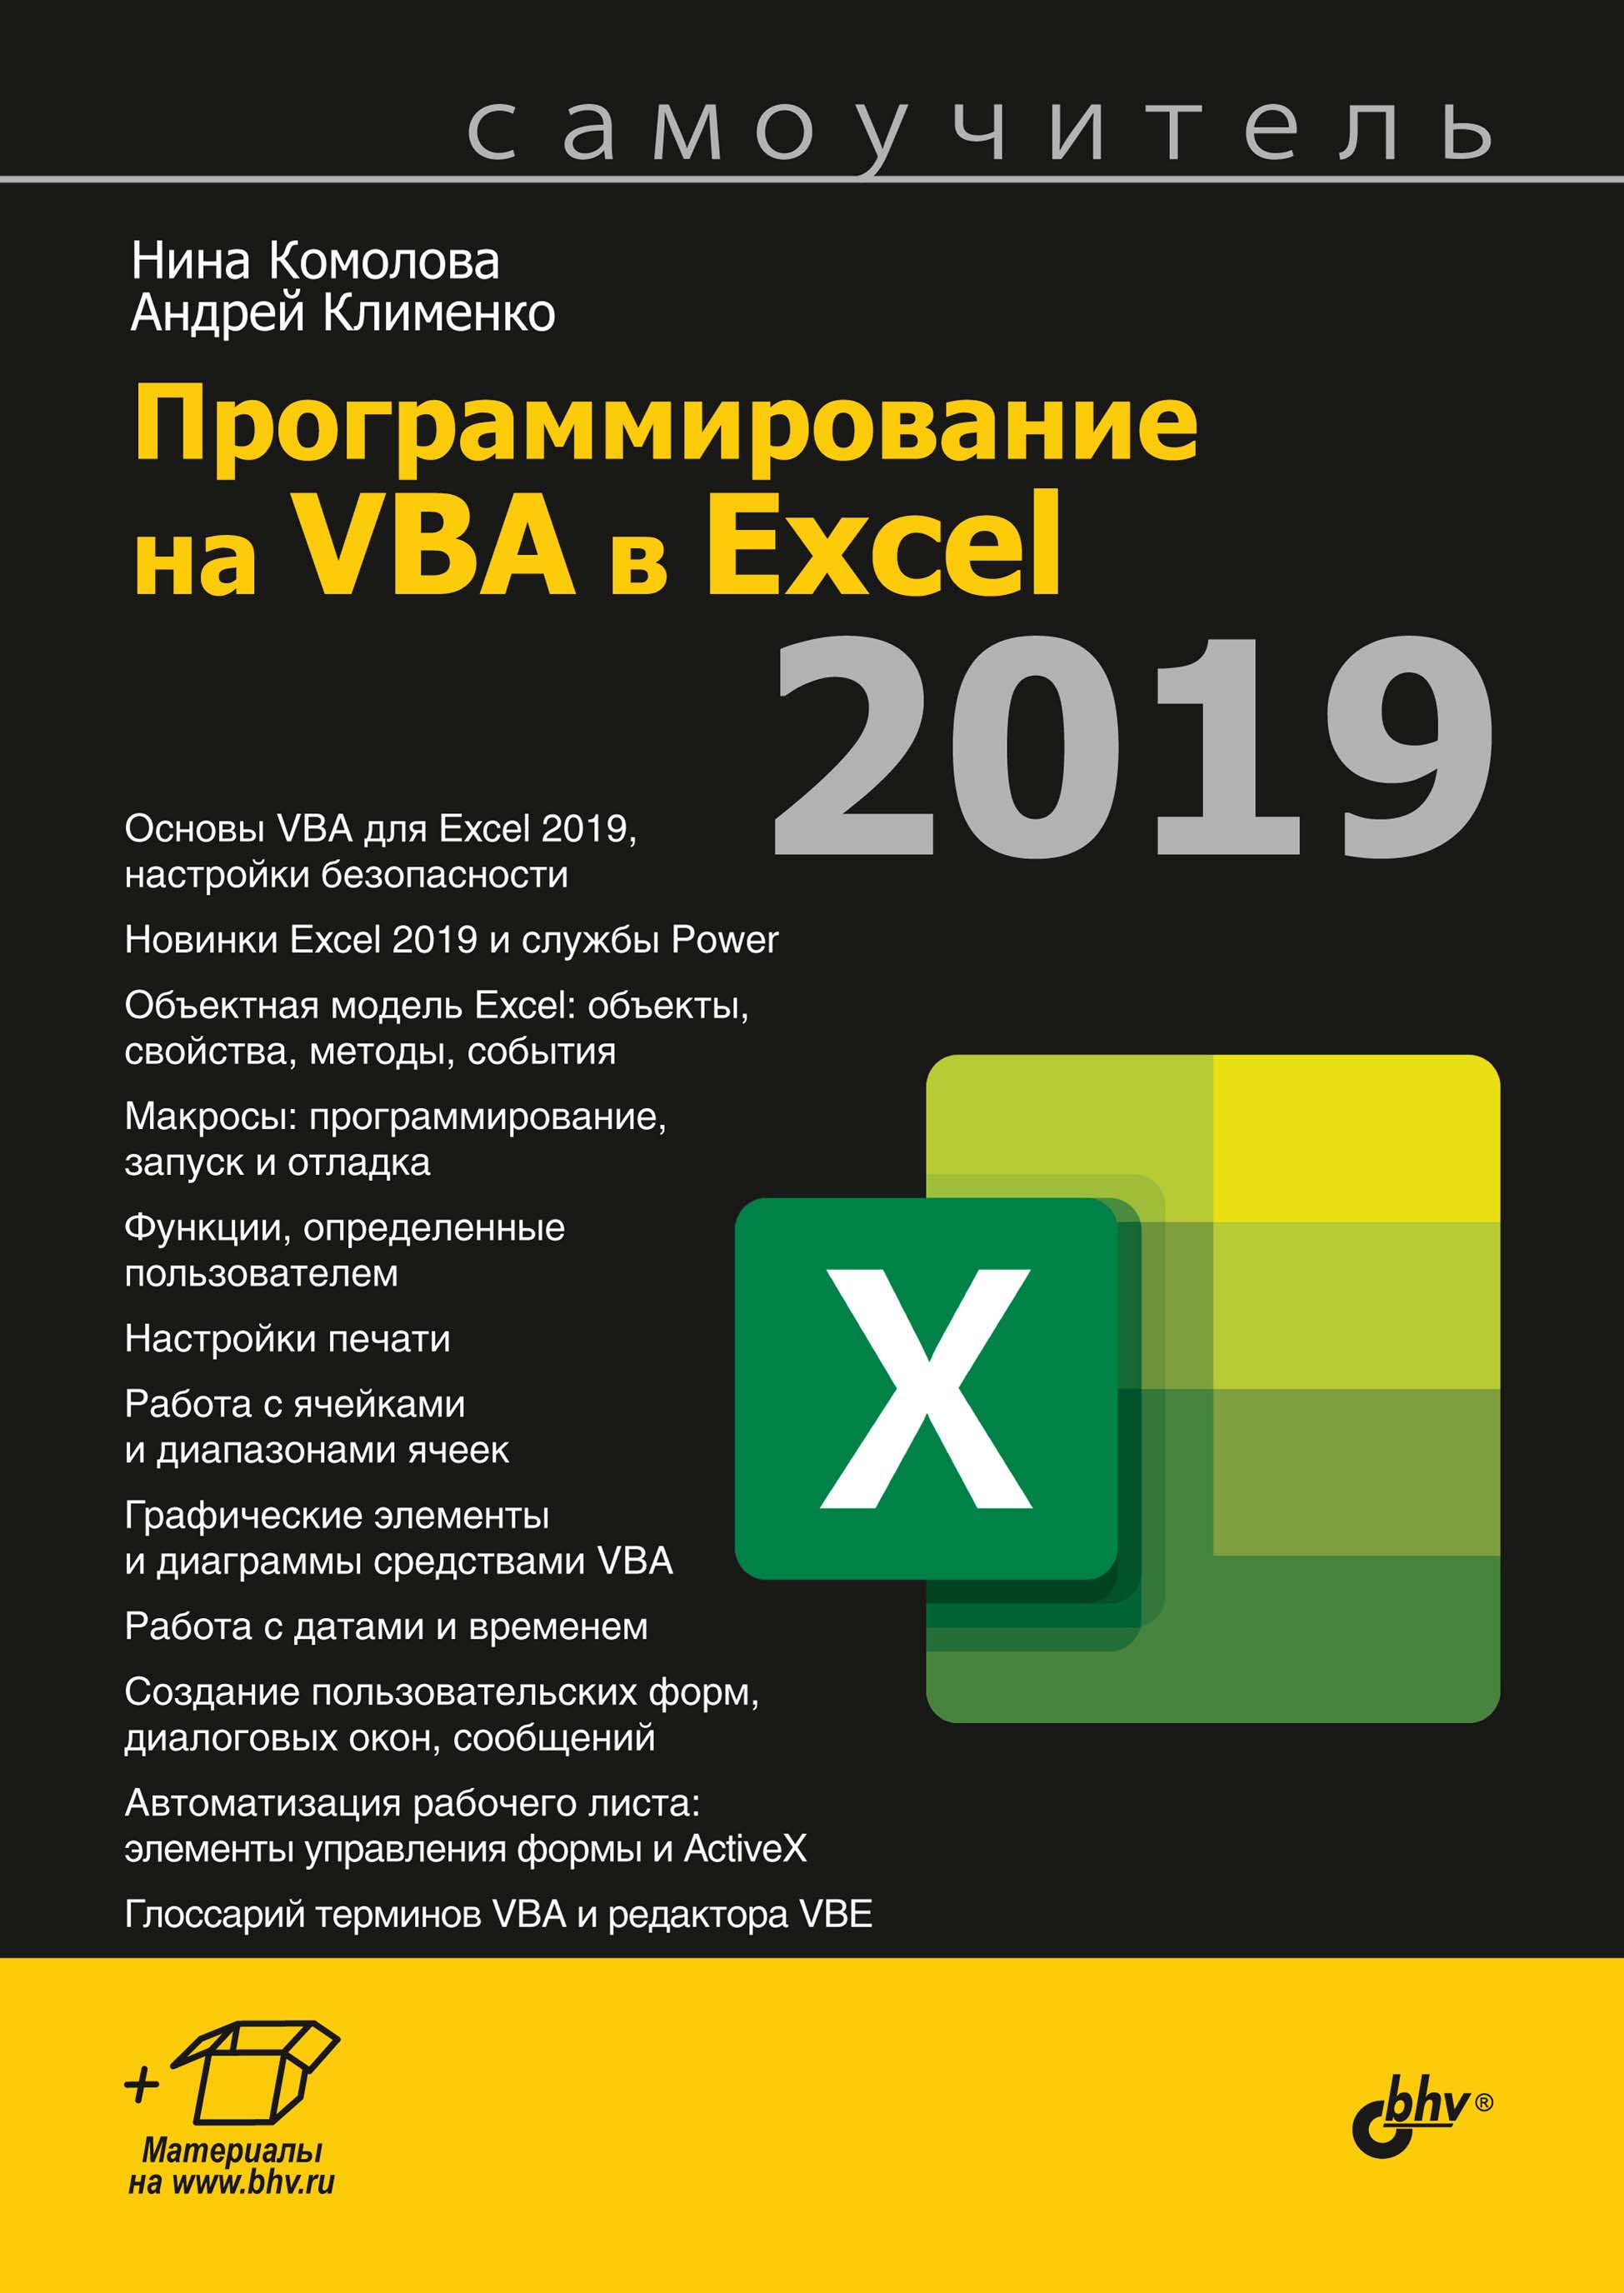 Книга Самоучитель (BHV) Программирование на VBA в Excel 2019 созданная Нина Комолова, Андрей Клименко может относится к жанру программирование, программы, самоучители. Стоимость электронной книги Программирование на VBA в Excel 2019 с идентификатором 66338106 составляет 496.00 руб.